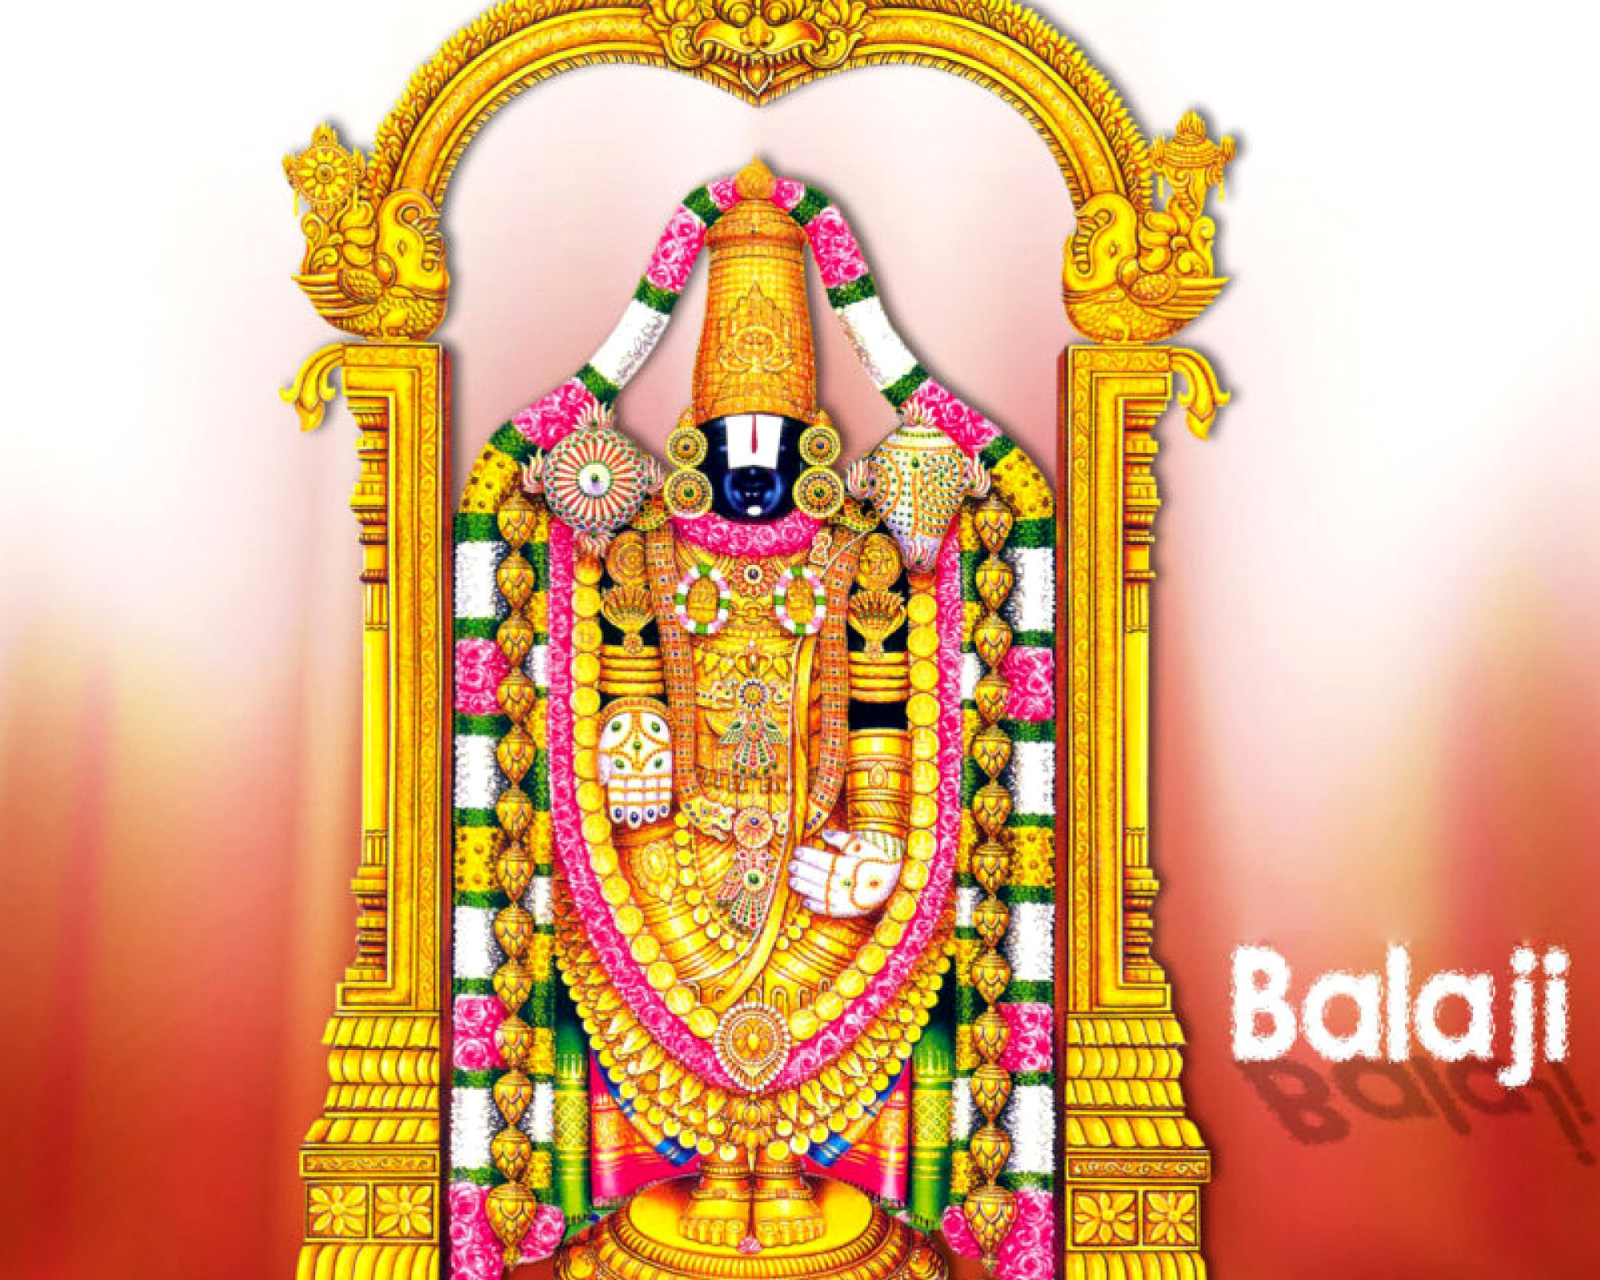 Balaji or Venkateswara God Vishnu wallpaper 1600x1280